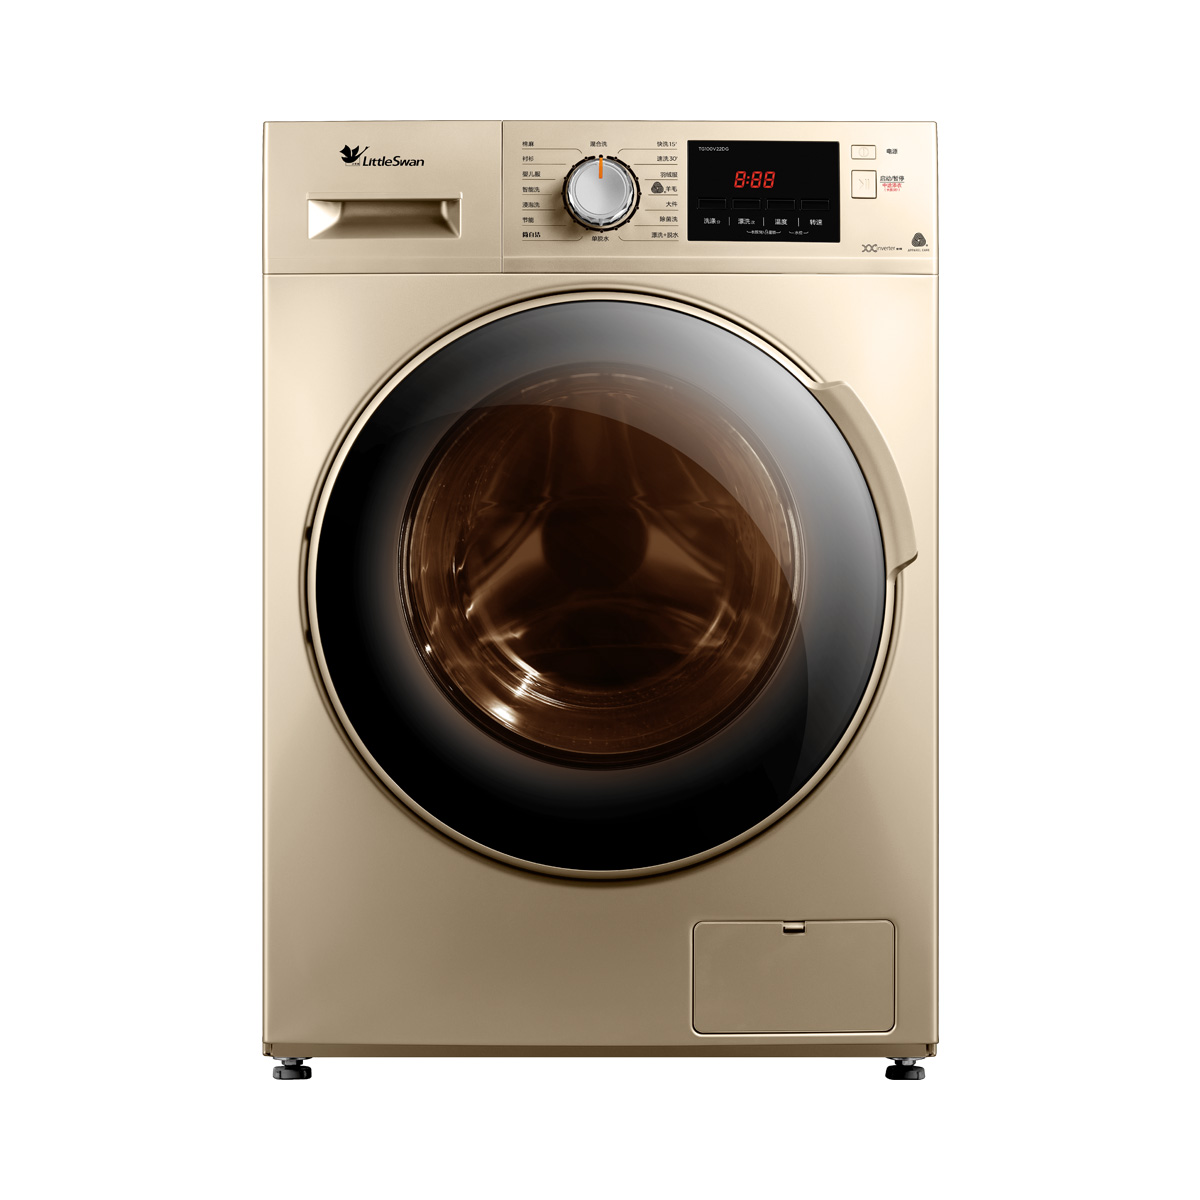 【Haier/海尔XQG60-1079】Haier/海尔滚筒洗衣机 XQG60-1079官方报价_规格_参数_图片-海尔商城